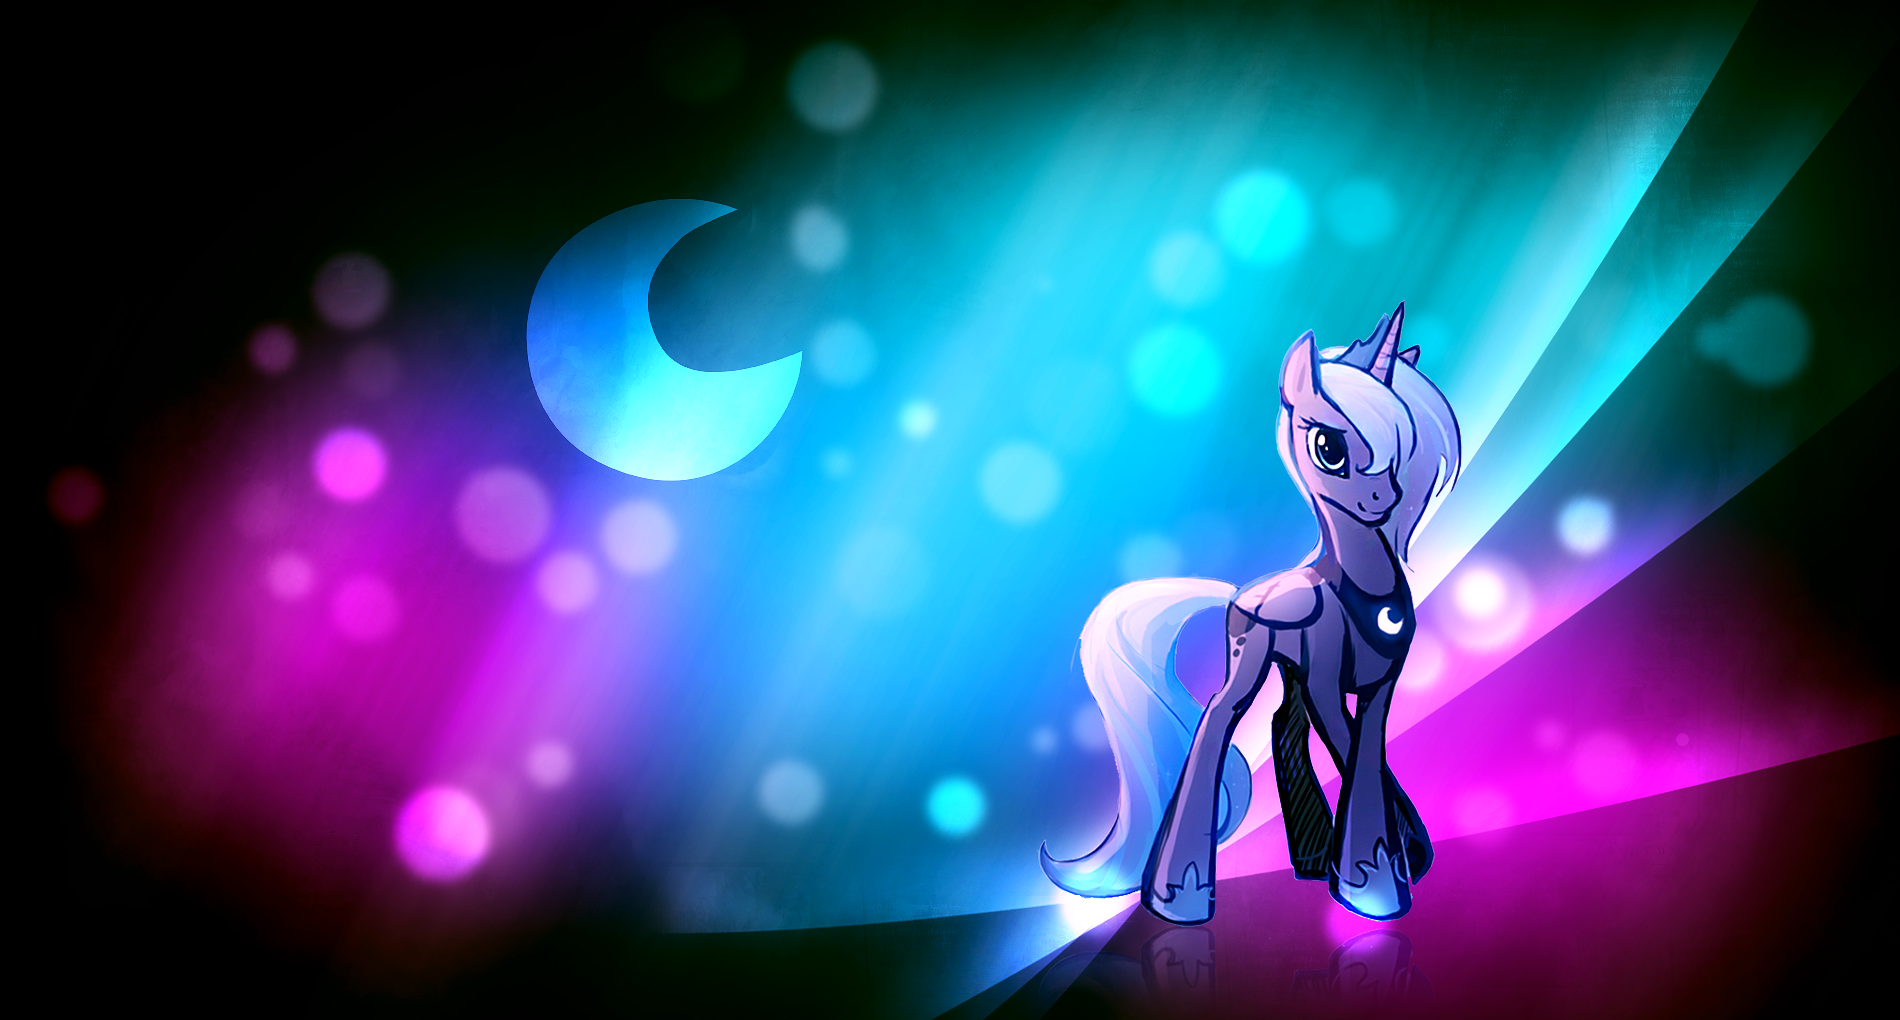 BG: Luna Aurora by palestorm and Vividkinz